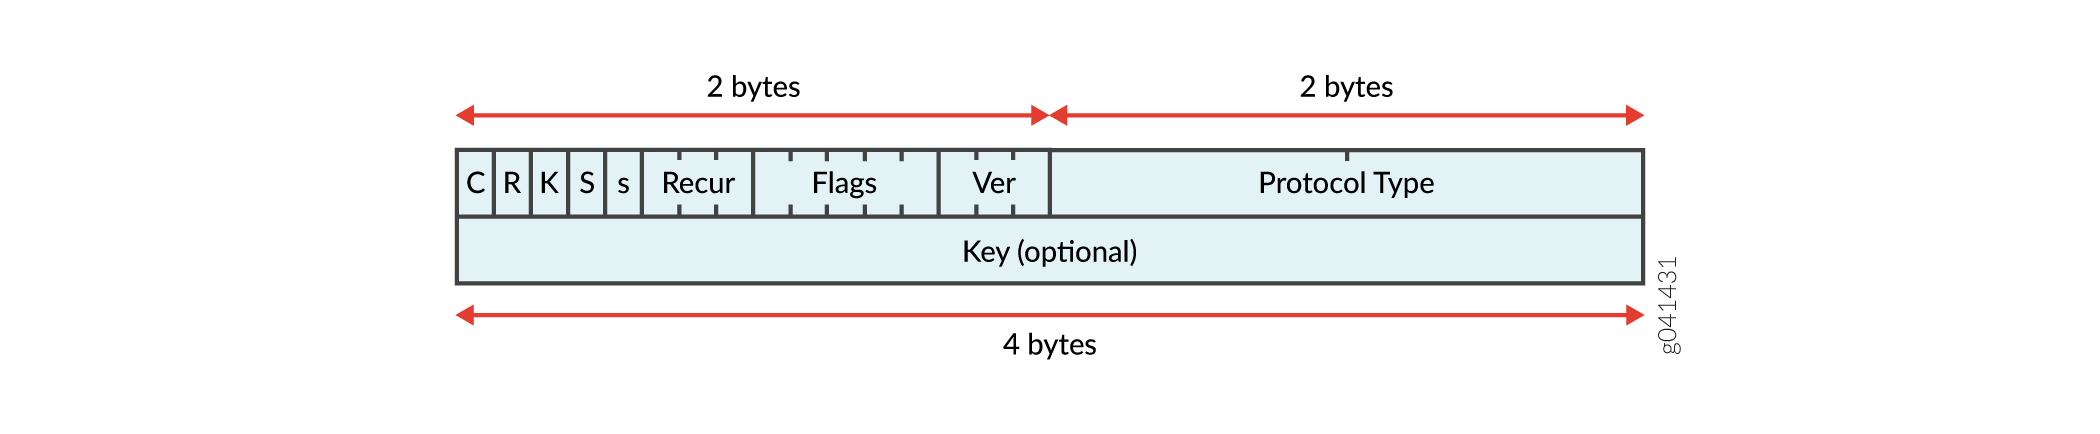 Estructura de encapsulación para tunelización basada en filtros a través de una red IPv4